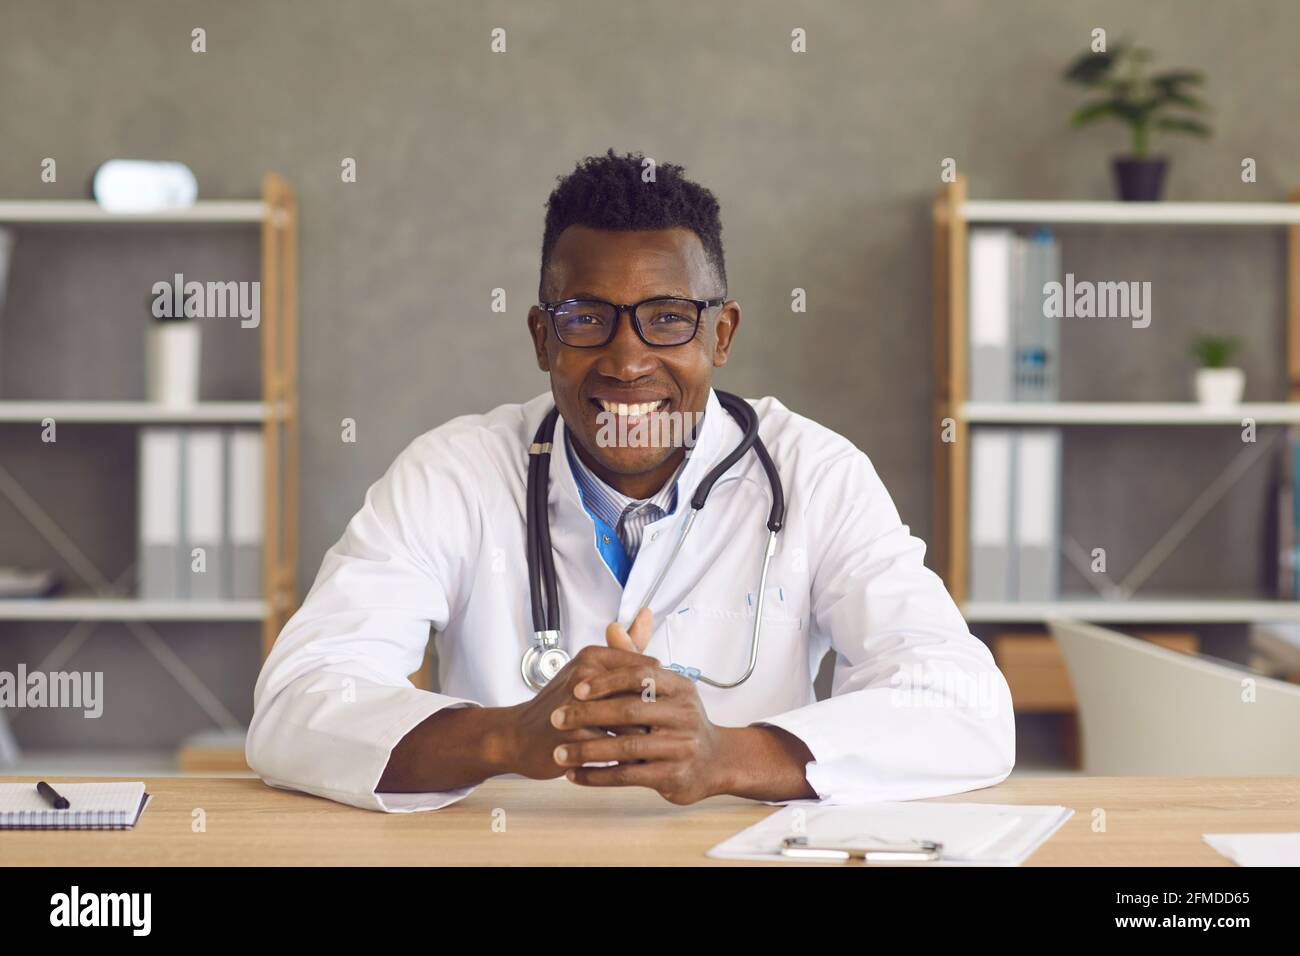 Der männliche Arzt sitzt vor einer Webcam und führt eine Online-Konsultation mit einem Patienten durch. Stockfoto